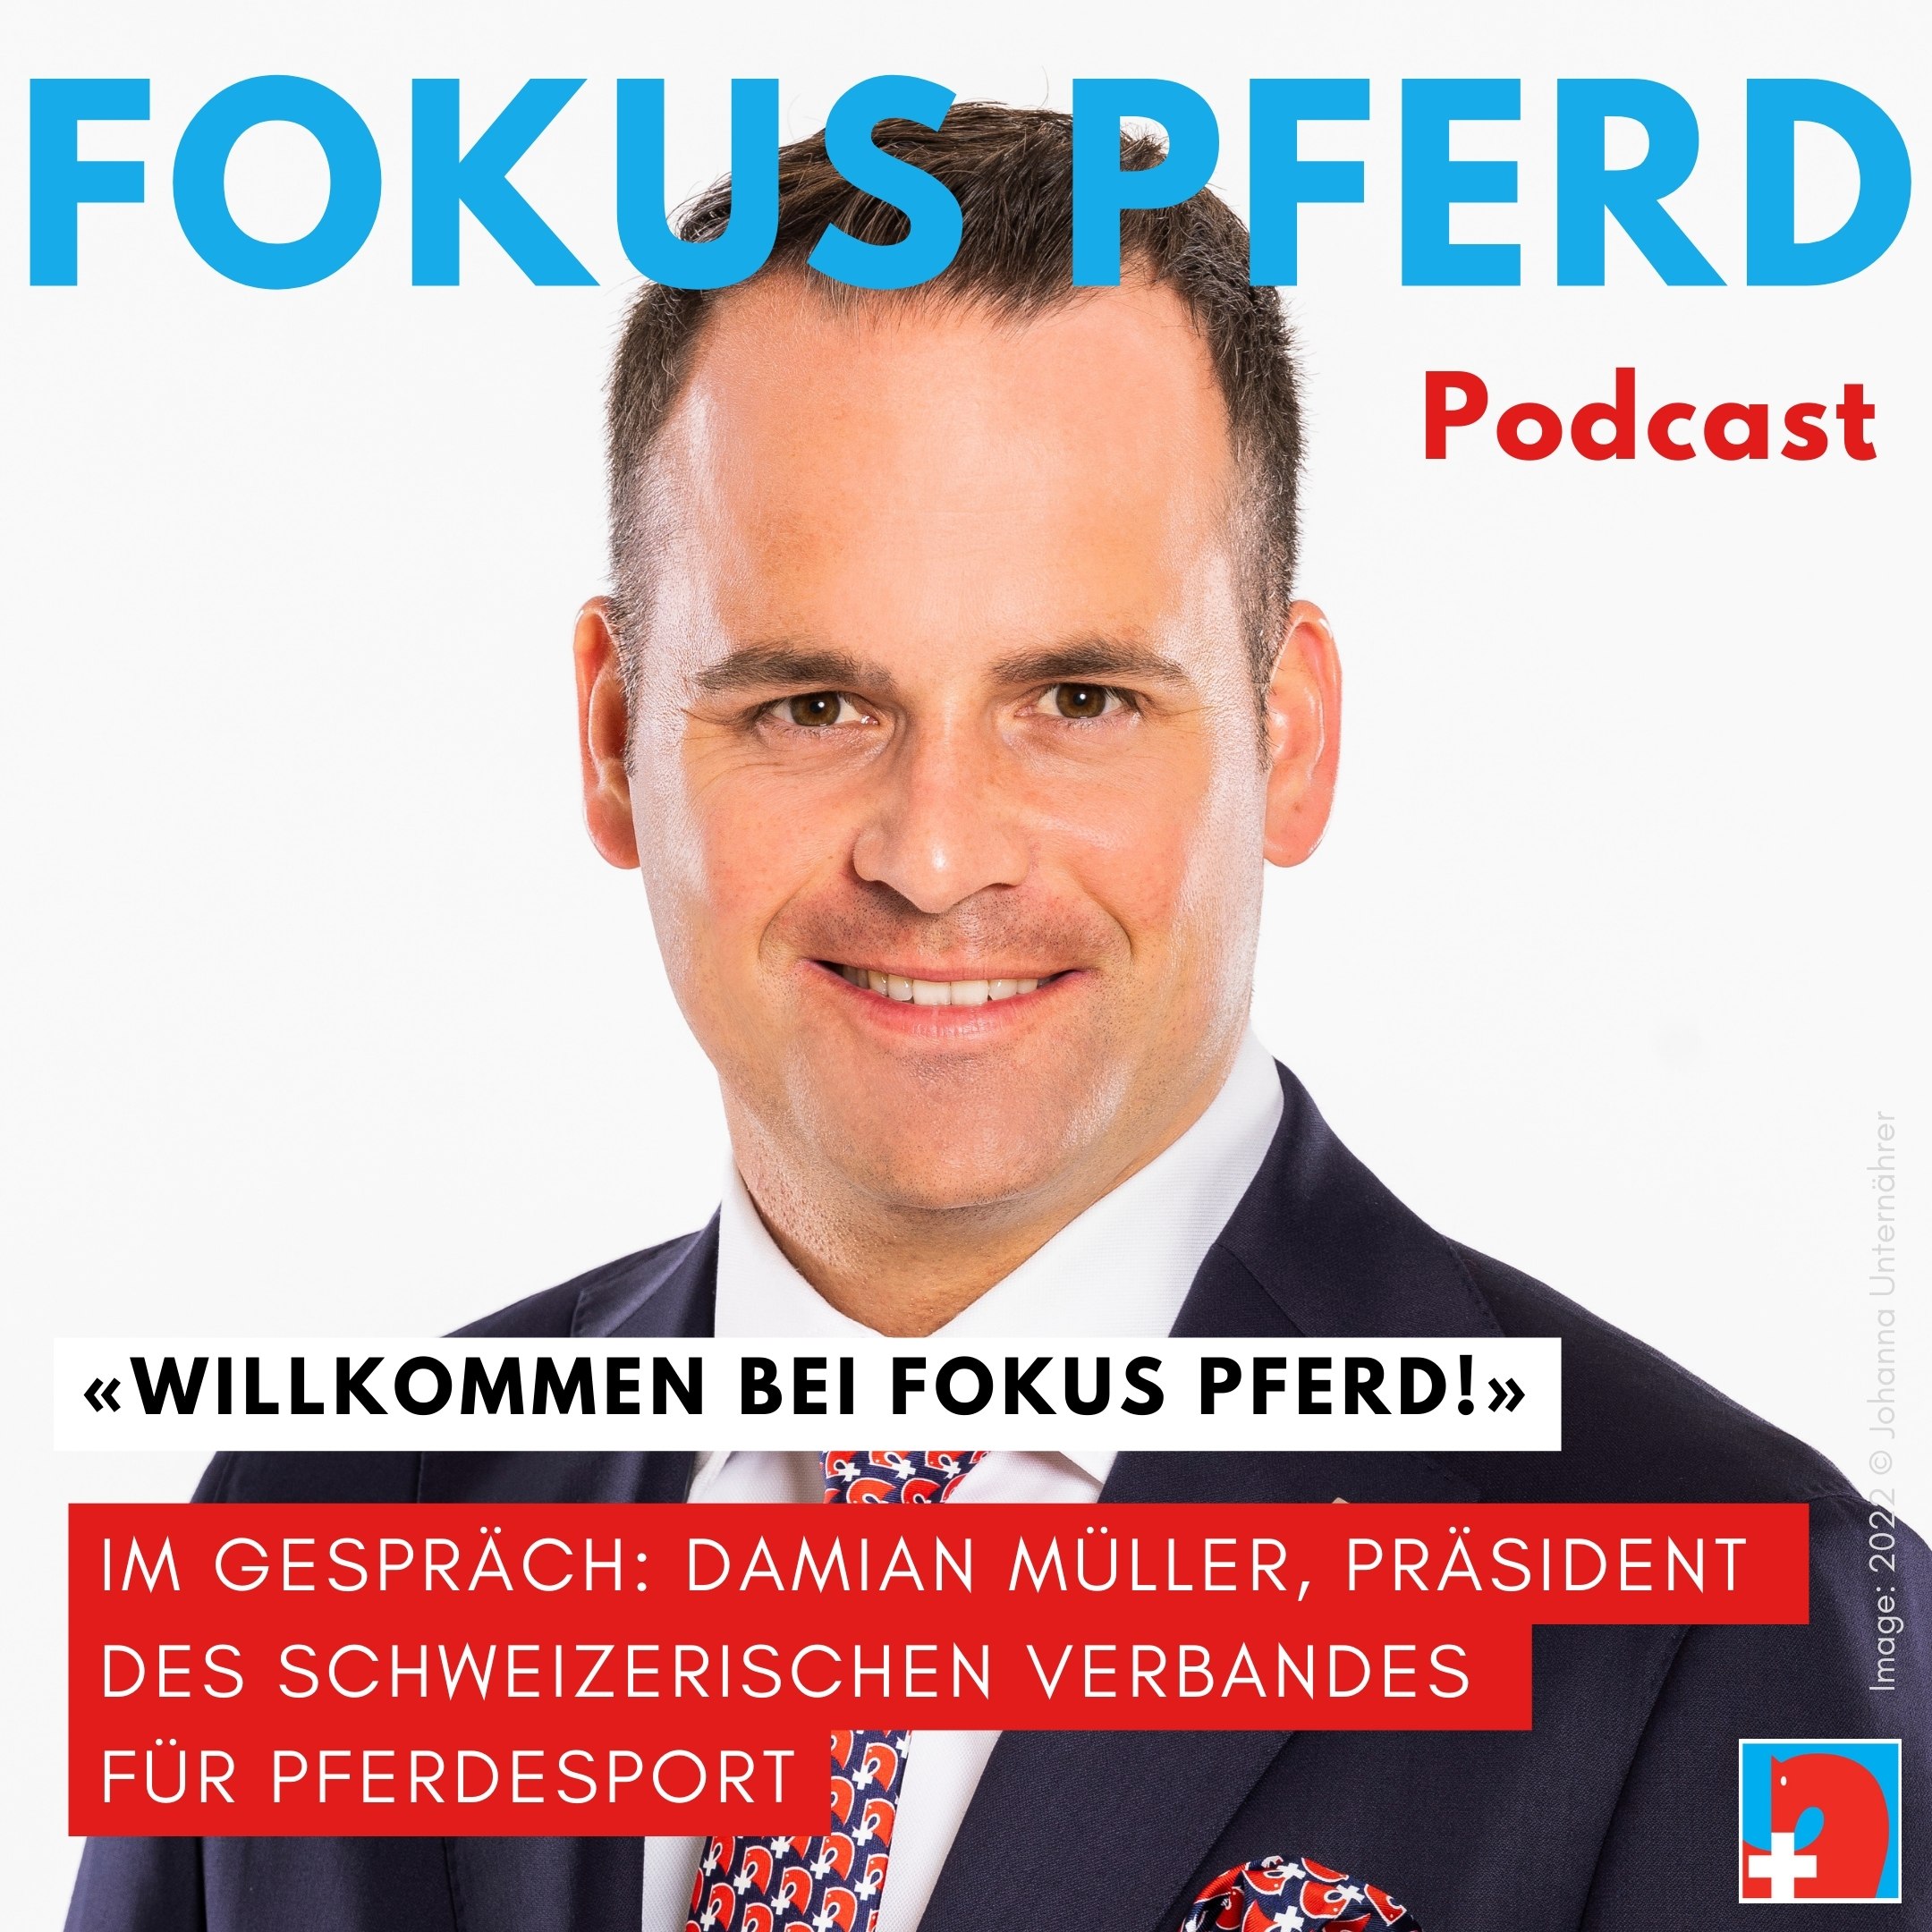 Artwork for podcast Fokus Pferd